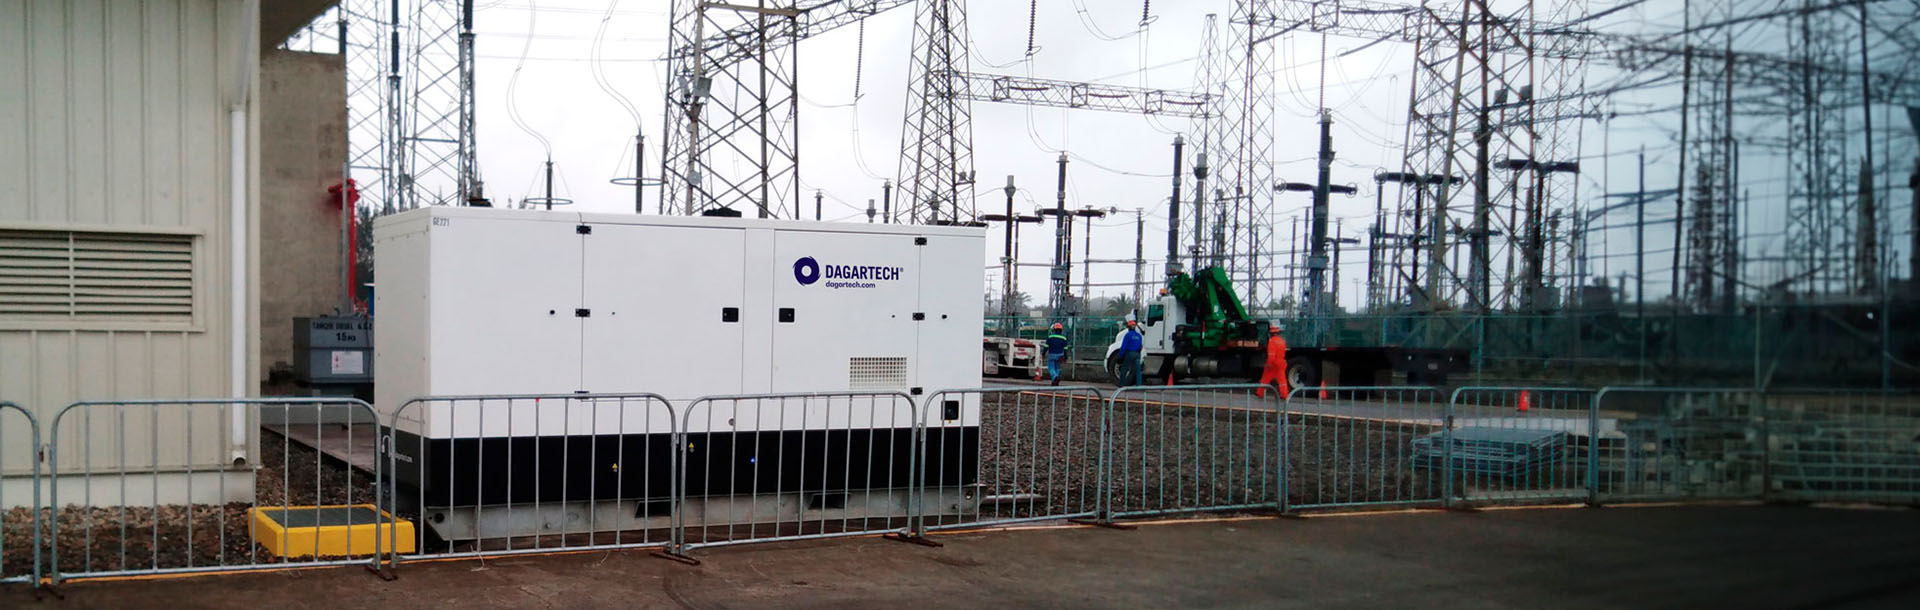 4800kW de energía Dagartech garantizan las labores de mantenimiento de la Central Termoeléctrica de Tuxpan, México